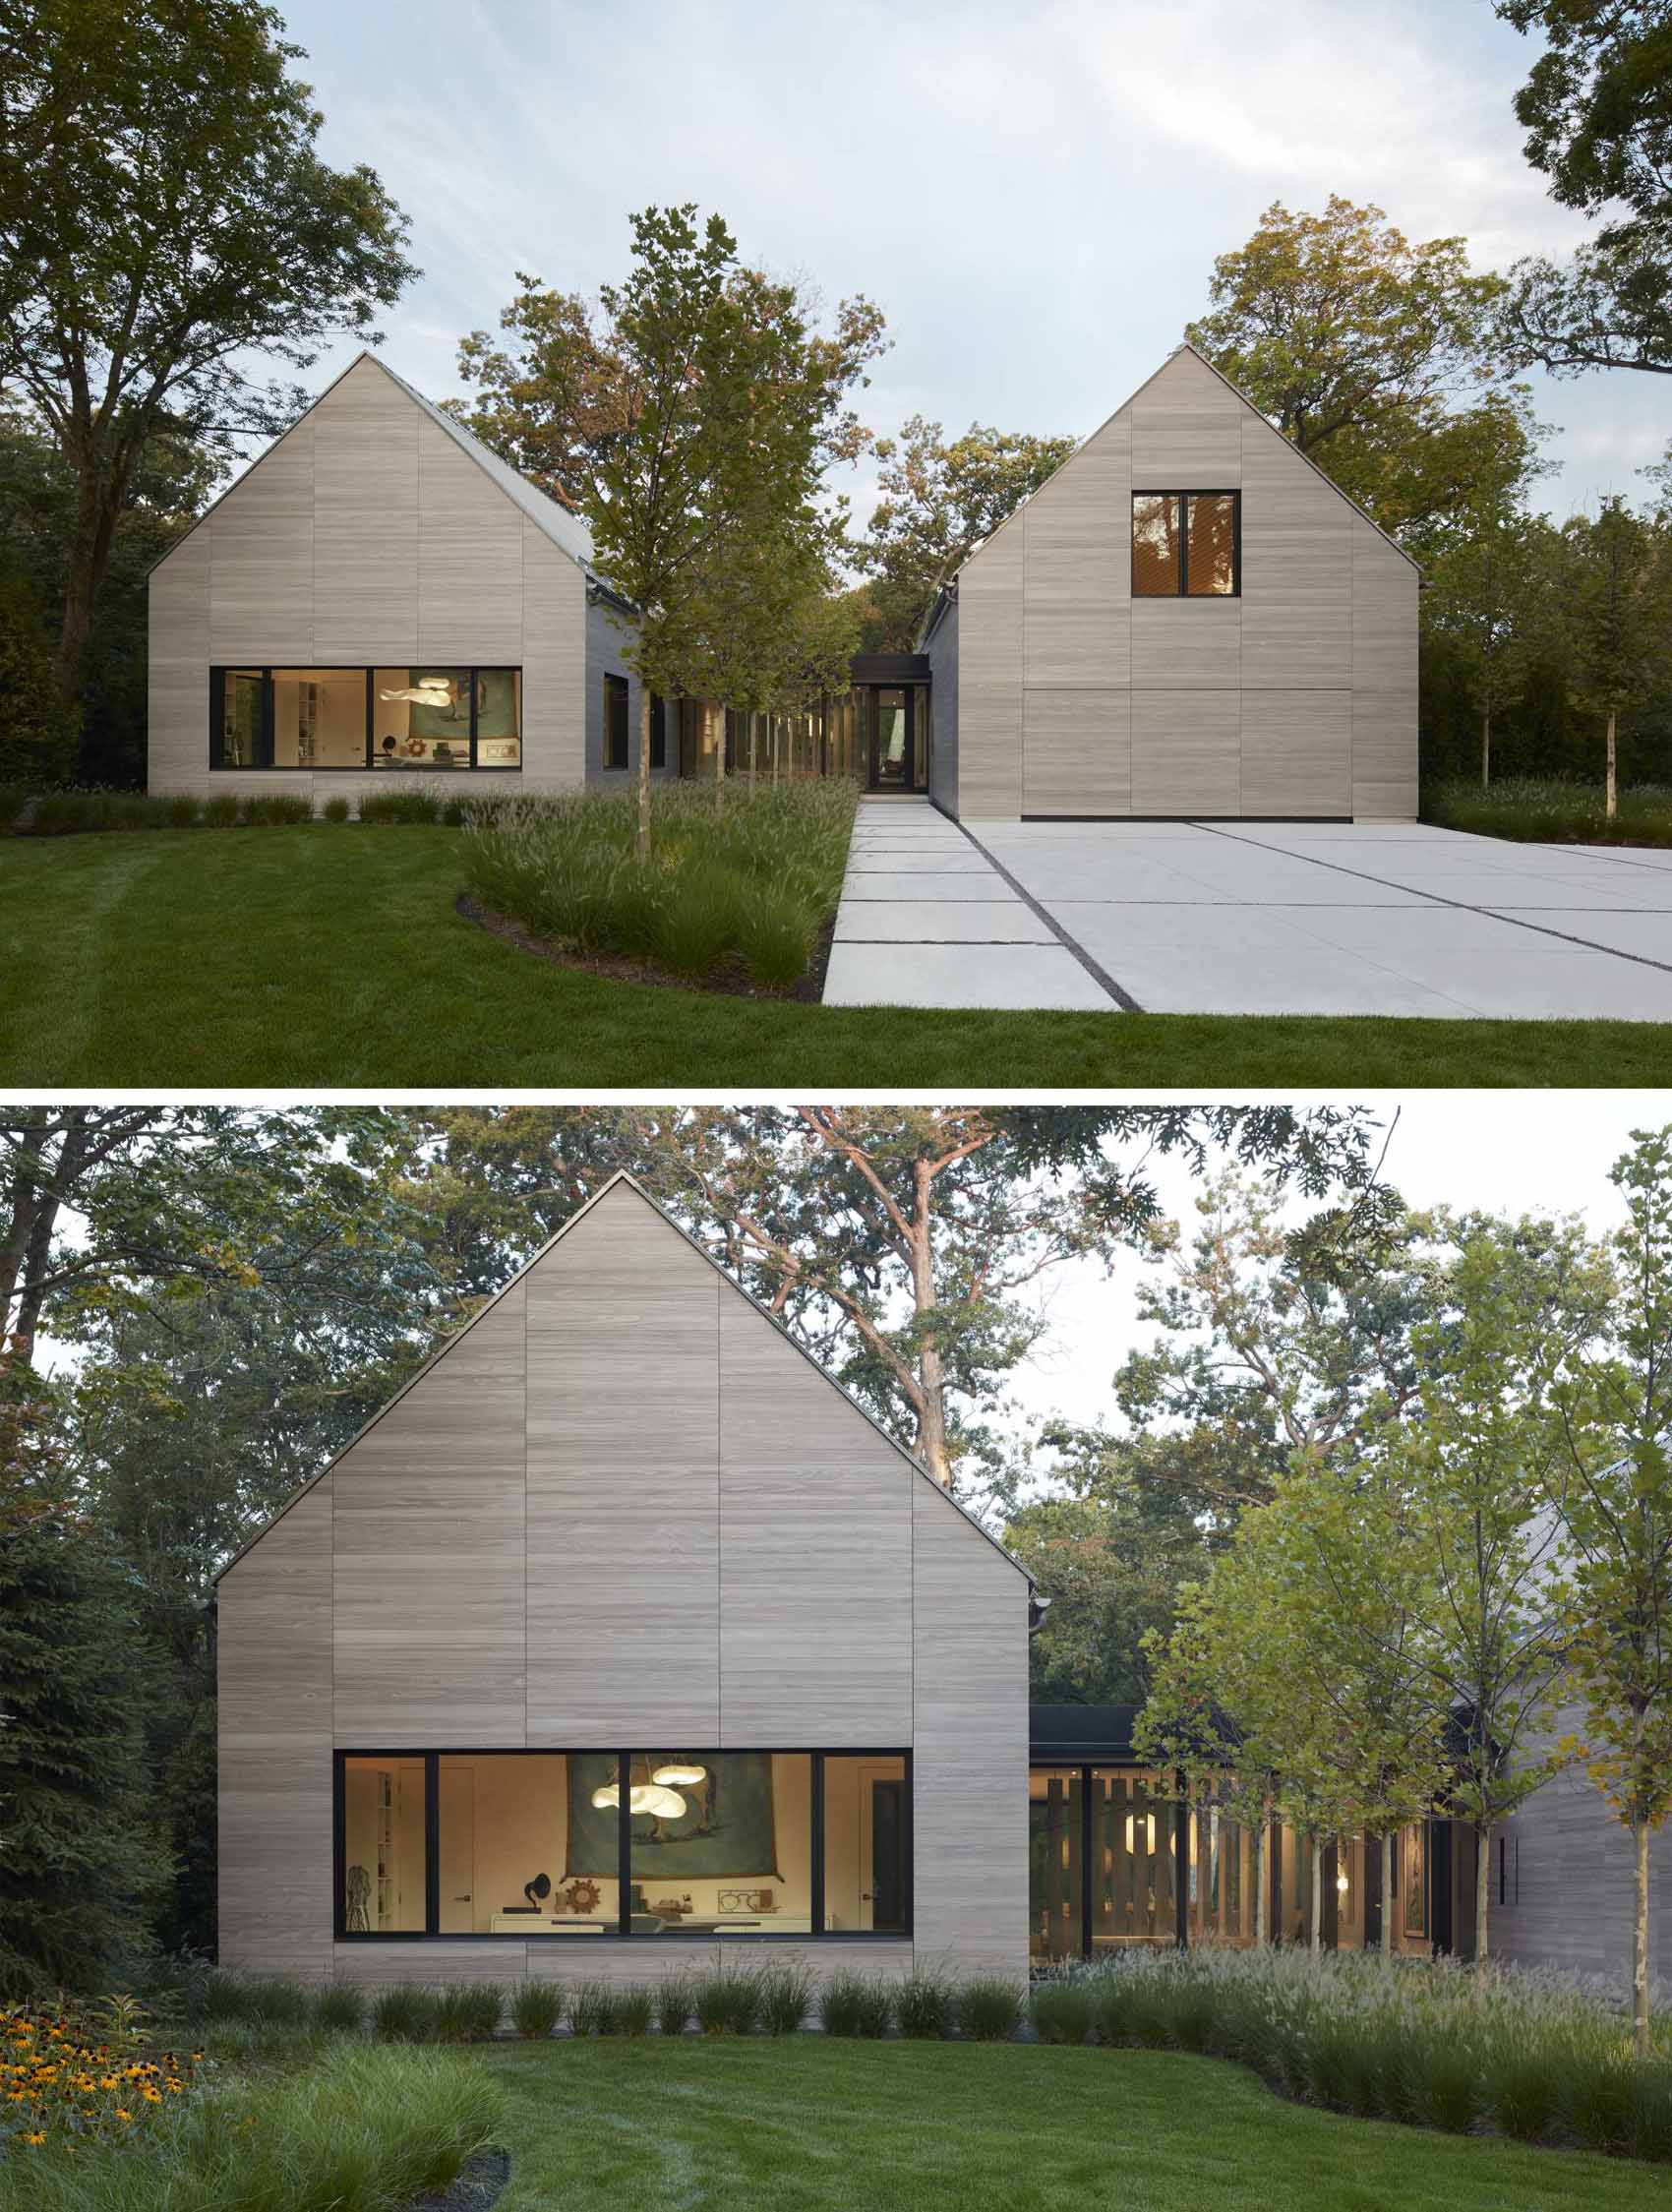 Внешний вид этого современного дома с двумя фронтонами отделан сайдингом Accoya теплого серого цвета, глубокими окнами и кровлей со стоячим фальцем цвета цинка.